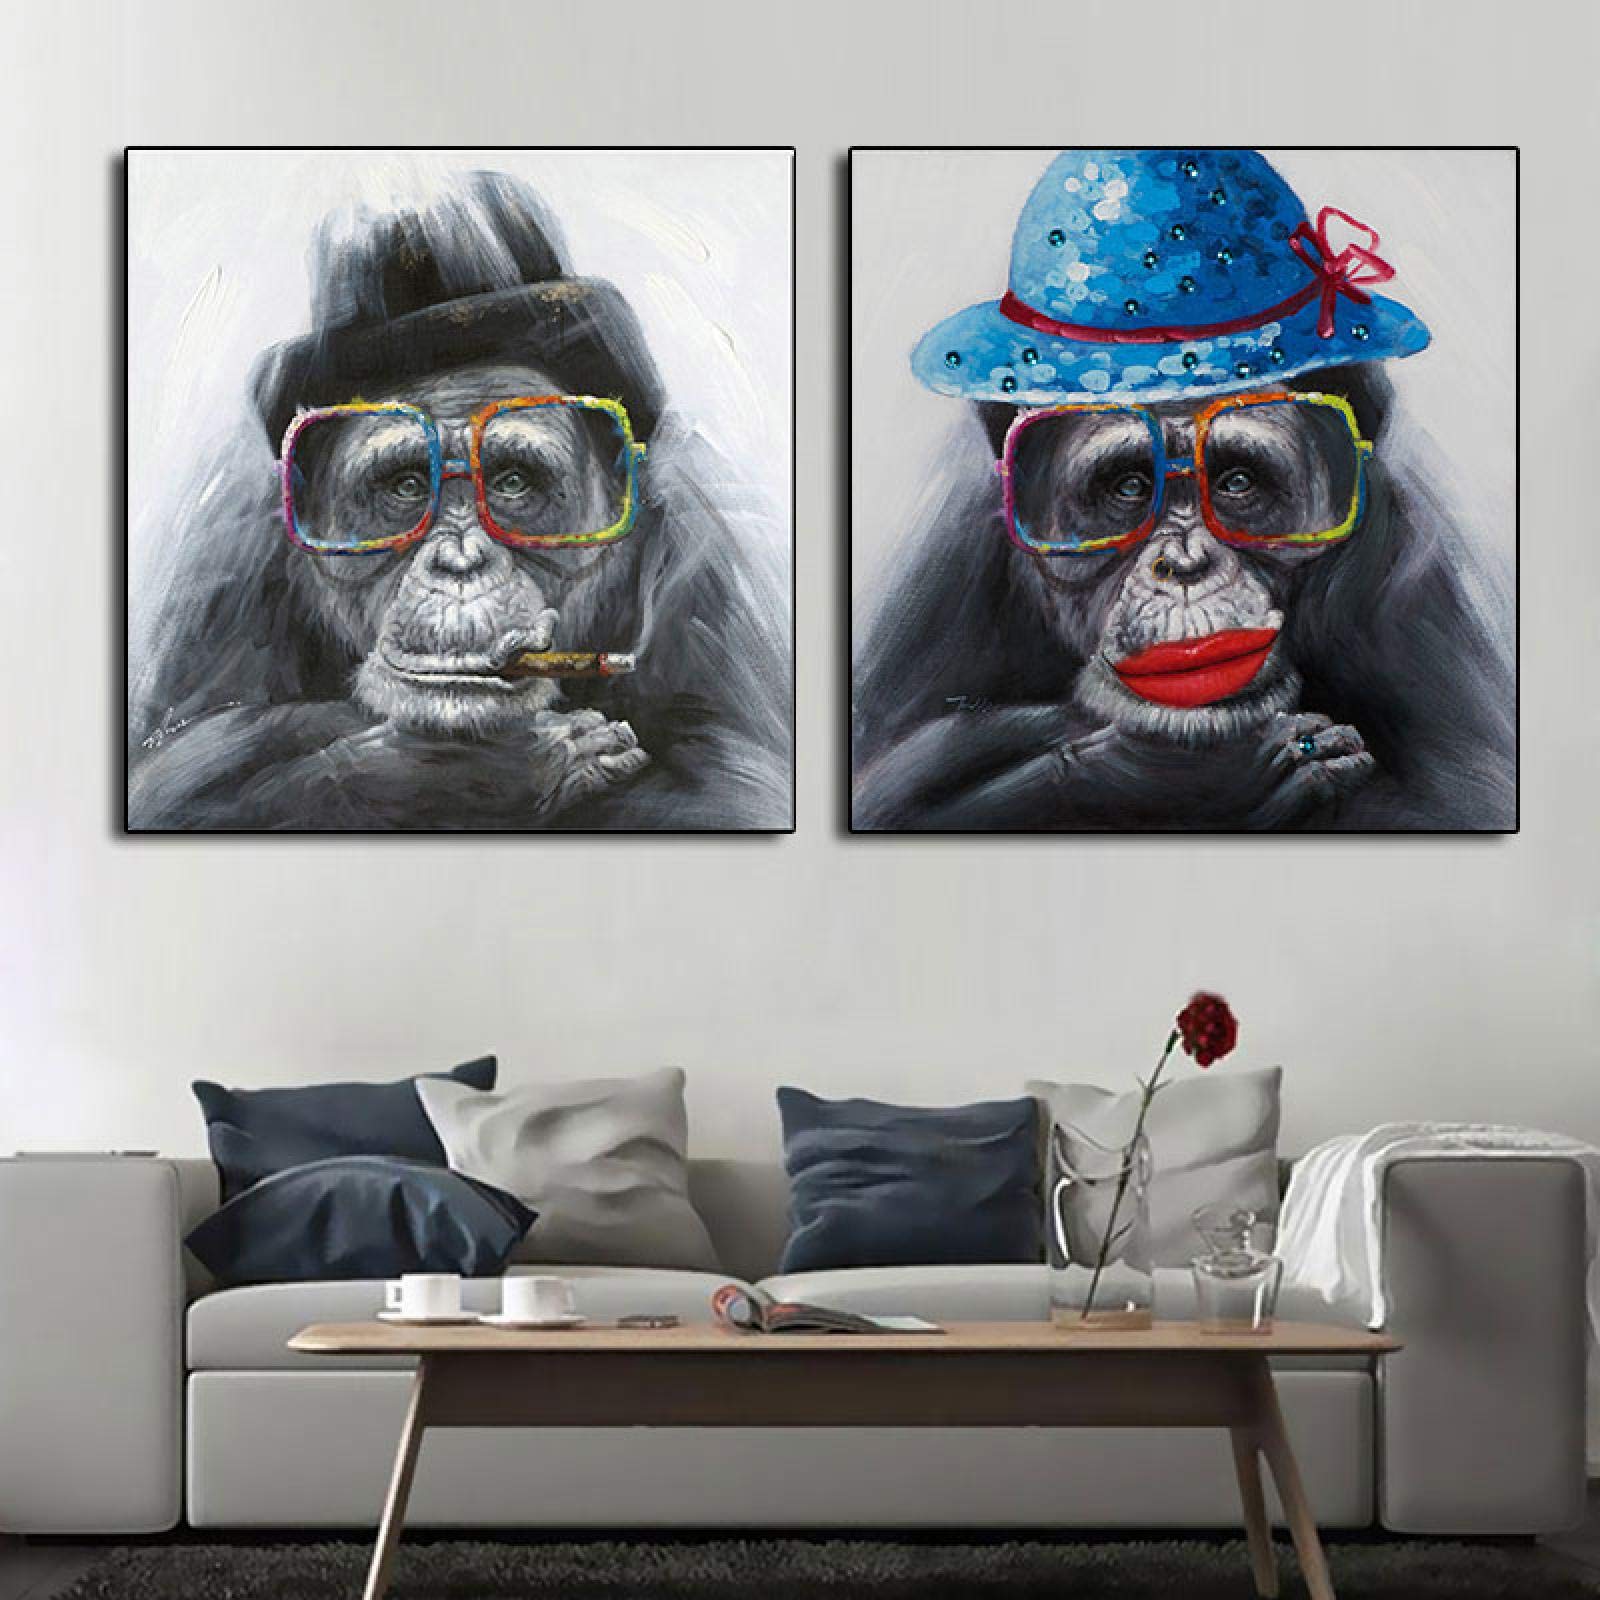 Leinwand Malerei Tier Poster und Drucke Rauchen AFFE Gorilla mit Brille Wandbilder für Wohnzimmer Home Decor-50x50cm 2 STK. Kein Rahmen